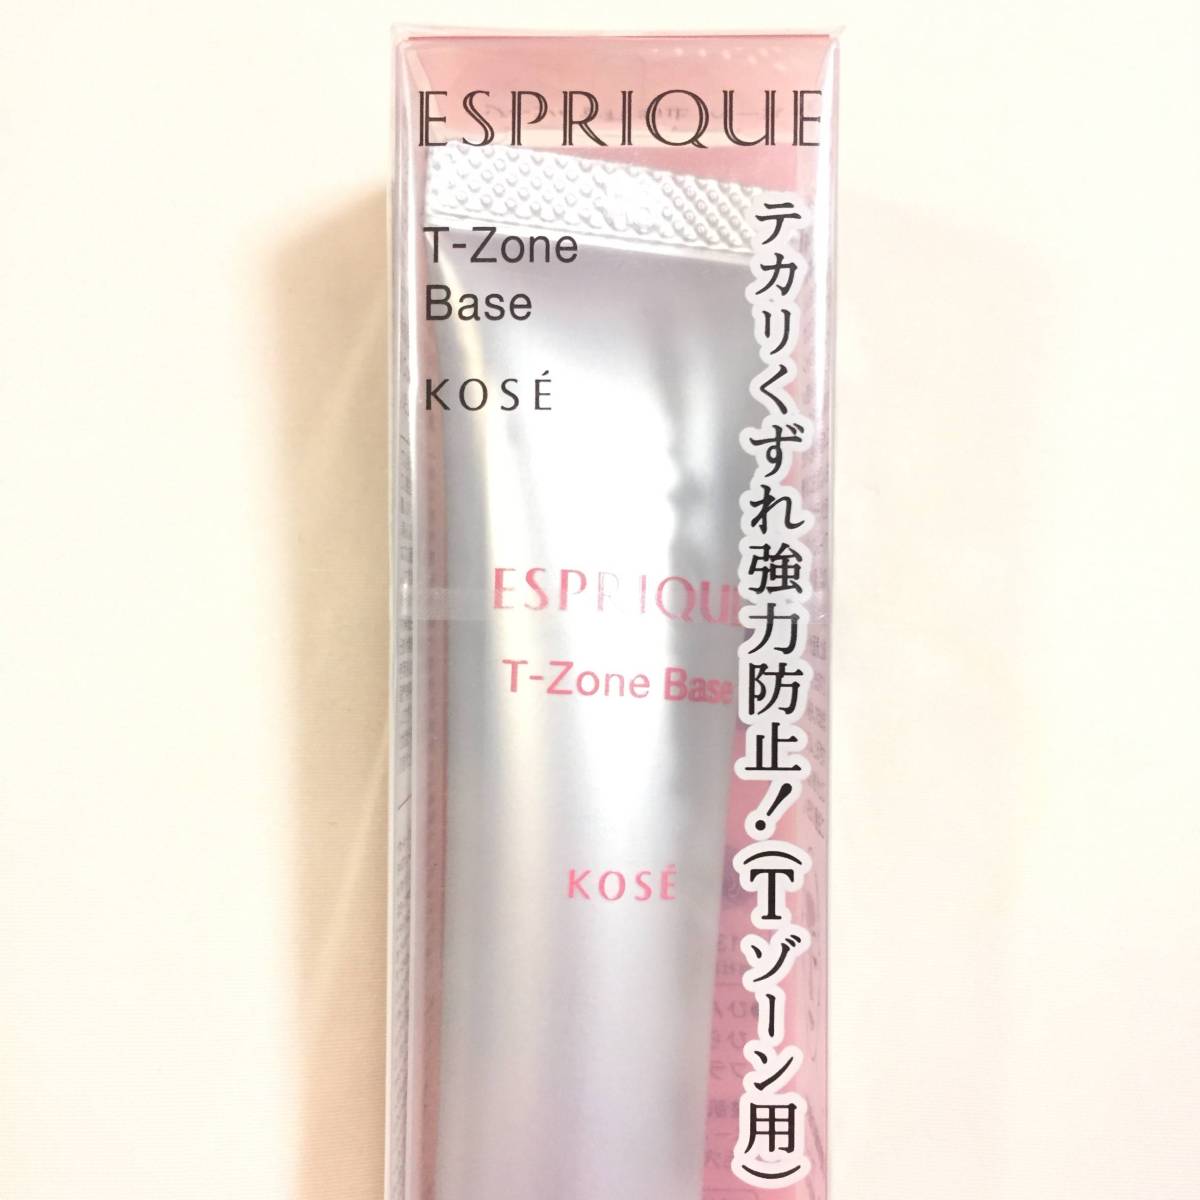  new goods *ESPRIQUE ( Esprique ) T Zone . gap prevention base ( makeup base * concealer )*